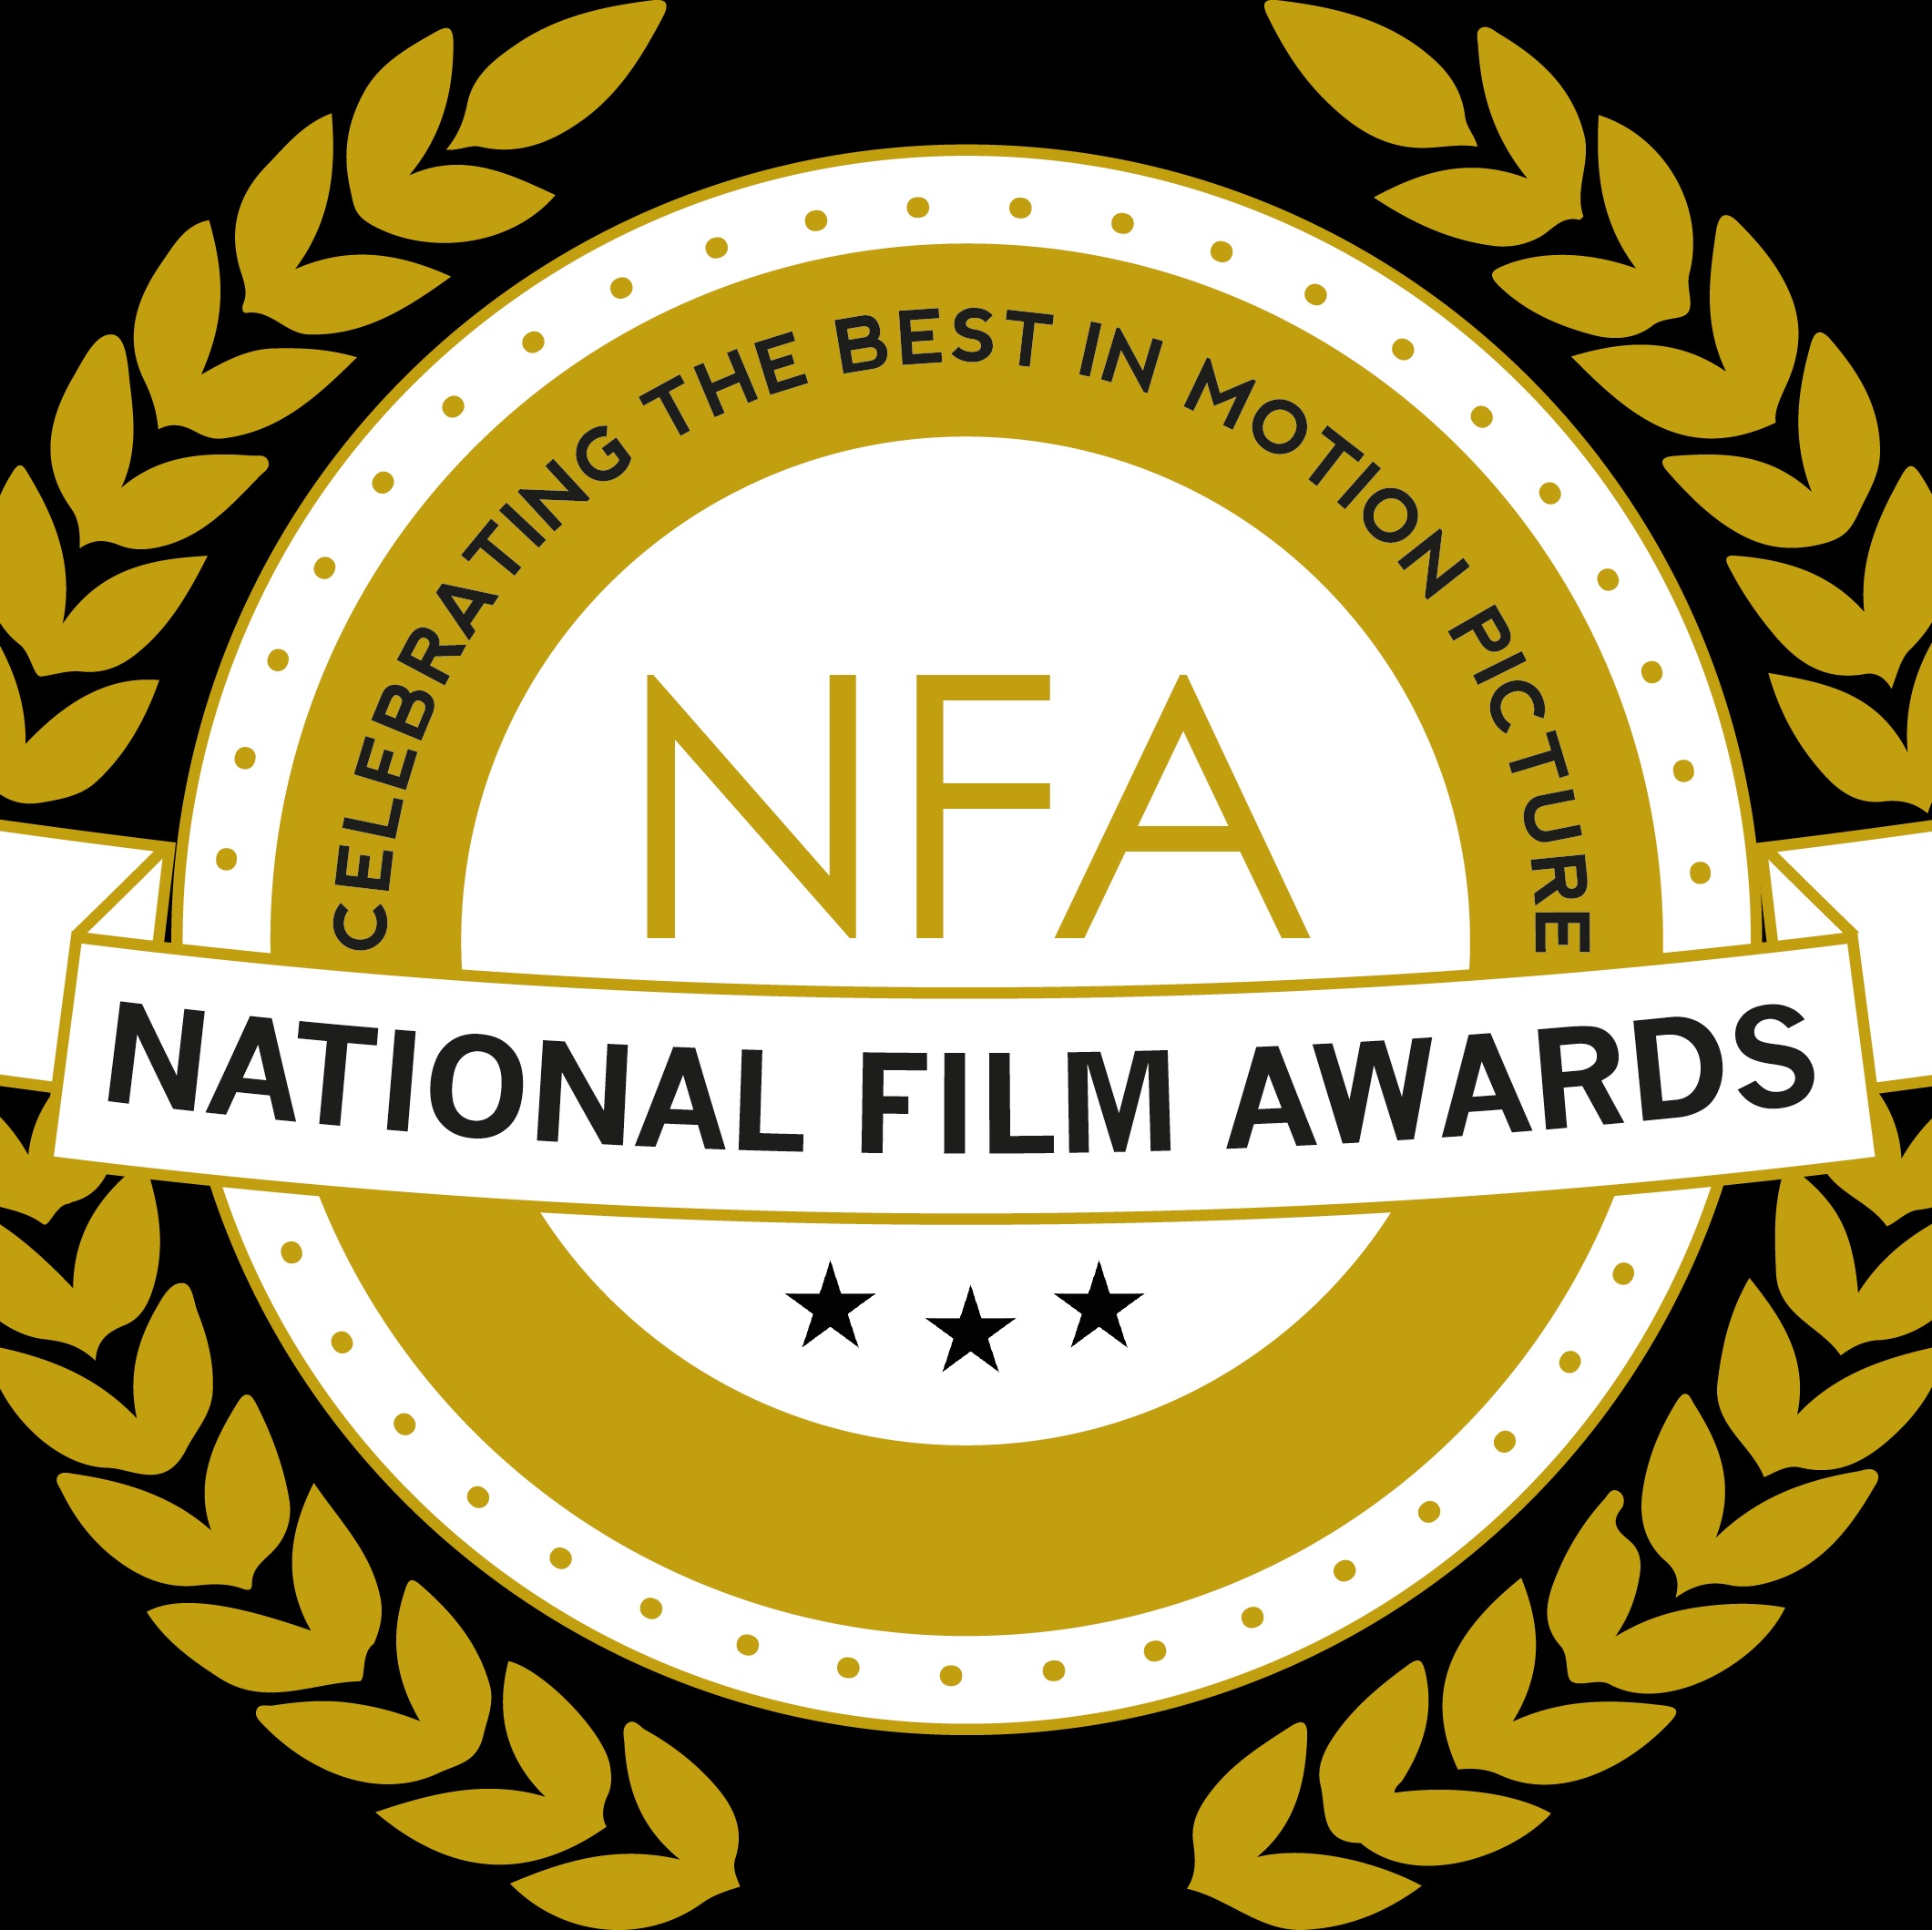 National Film Awards | राष्ट्रीय चित्रपट पुरस्कारातून इंदिरा गांधी आणि नर्गिस दत्त यांची नावे वगळल्याचा निषेध